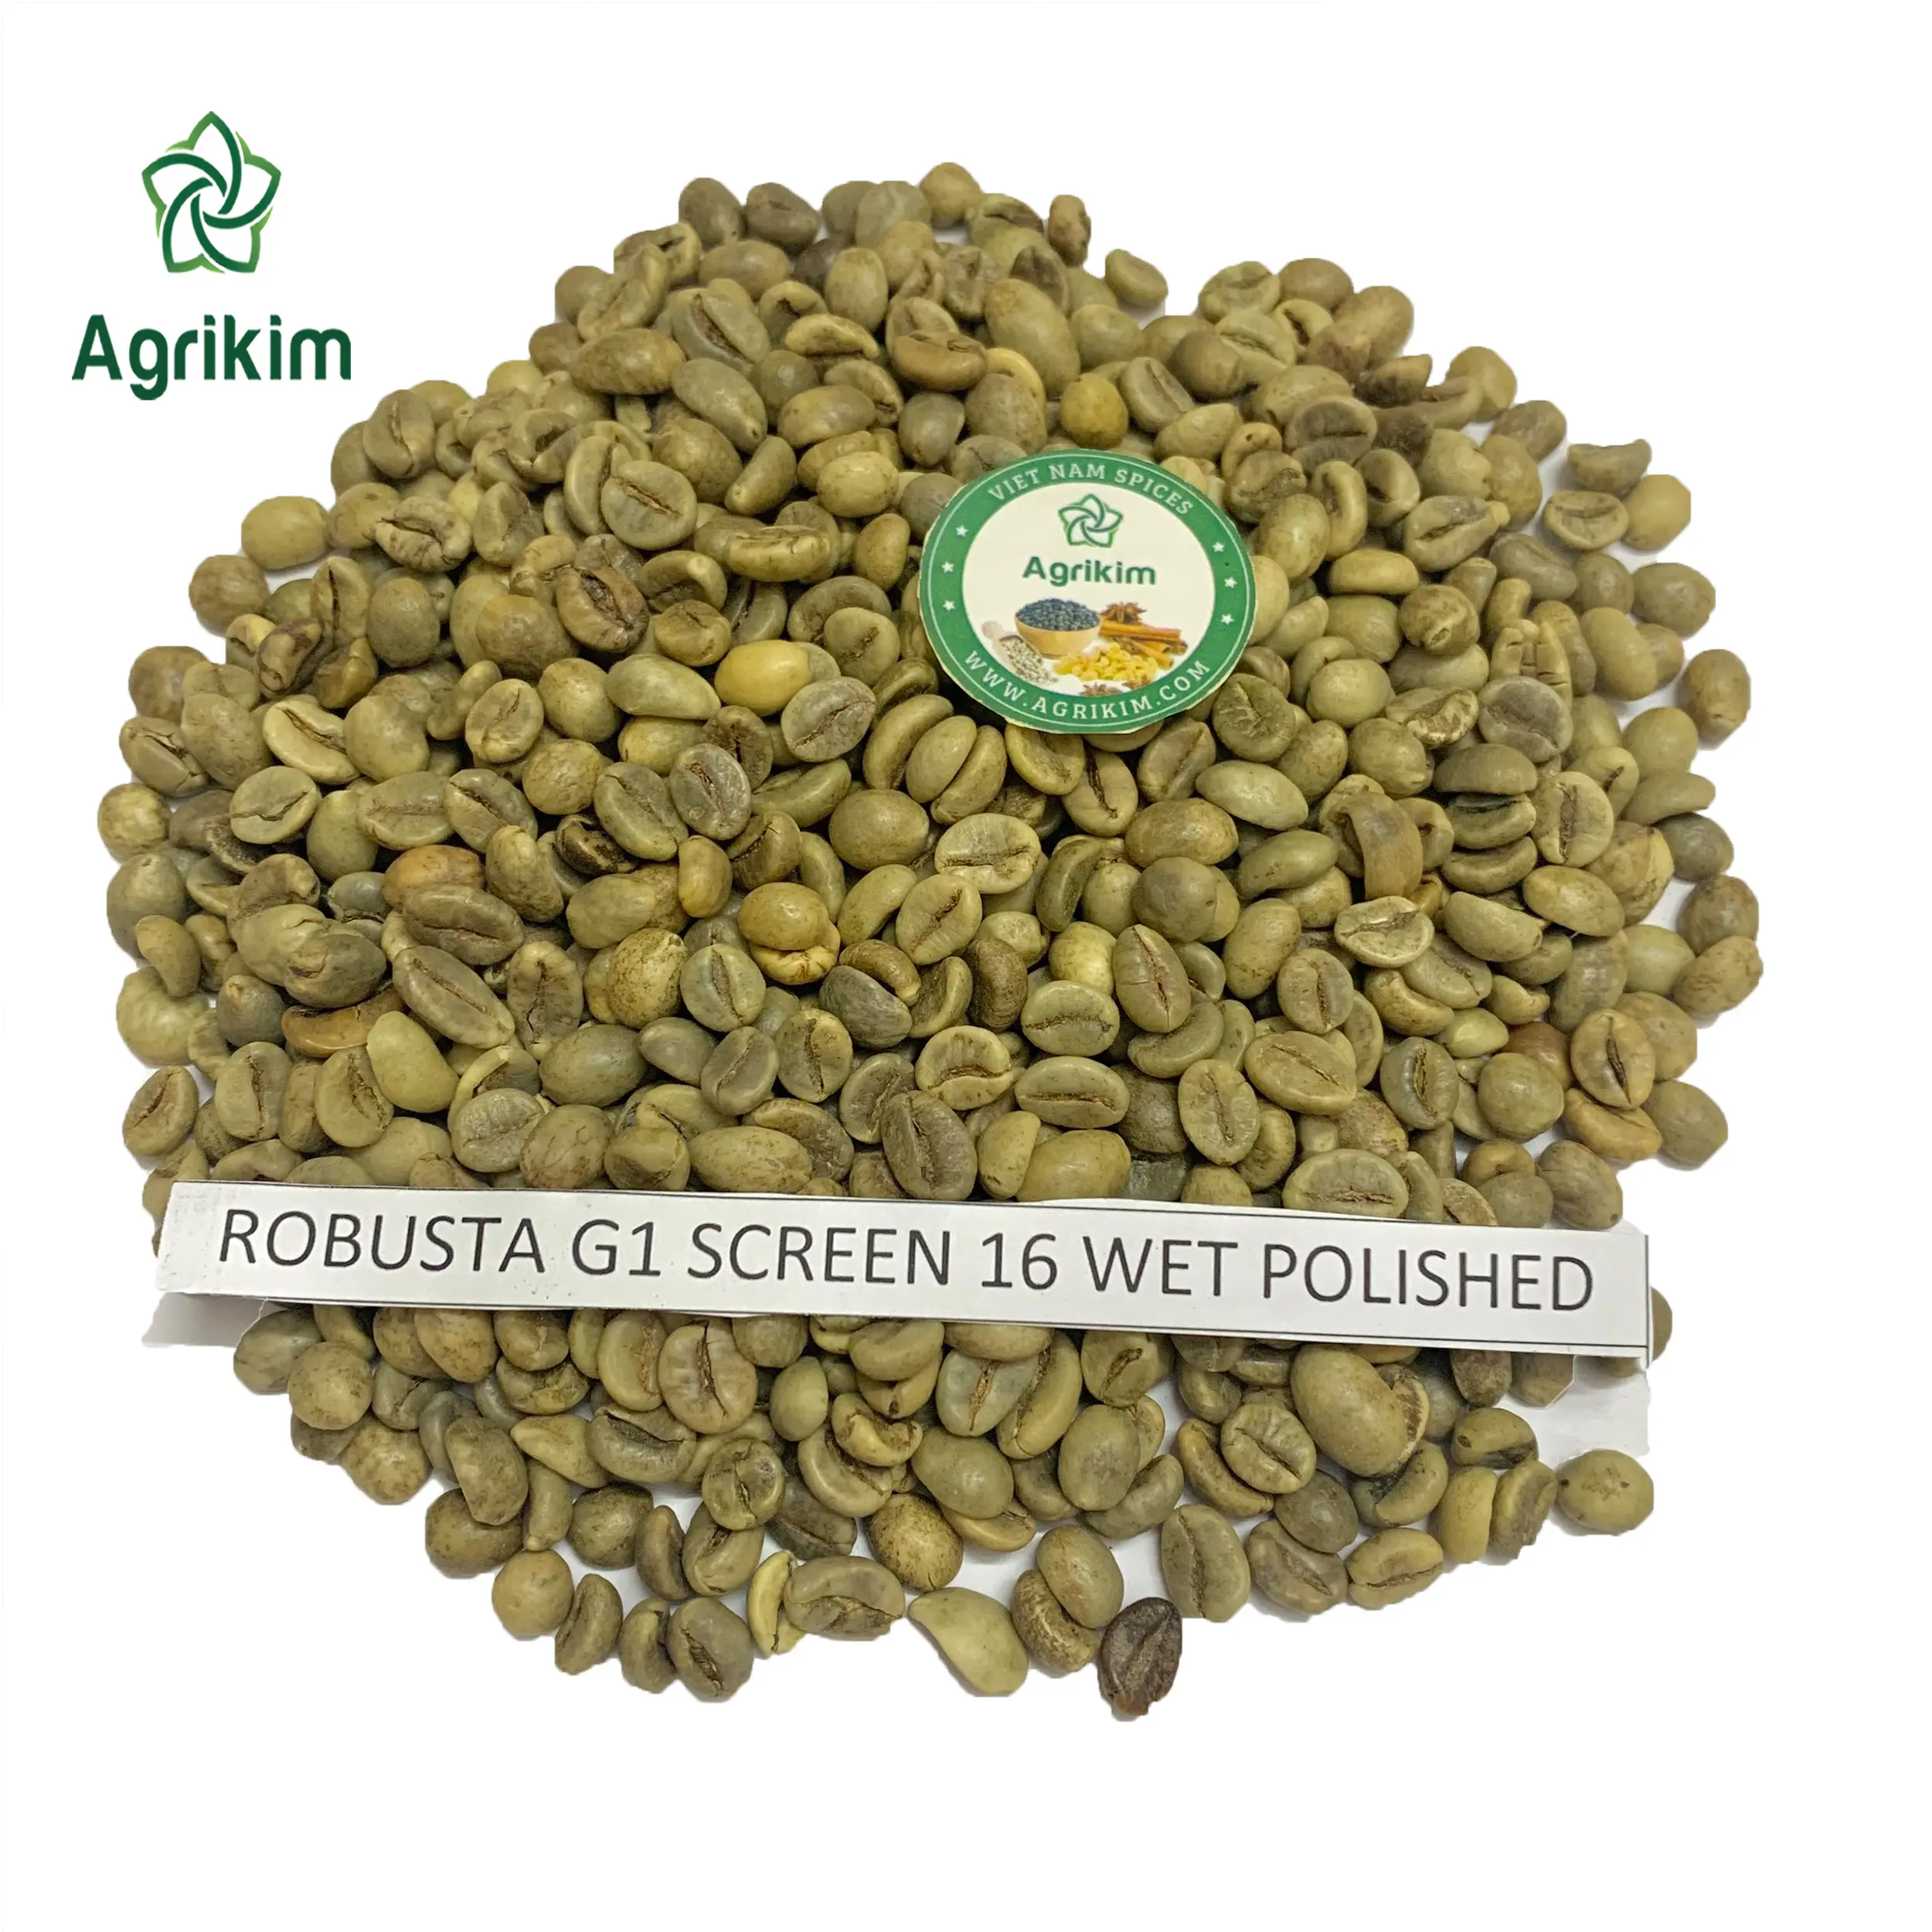 En iyi ihracat için ROBUSTA yeşil kahve çekirdekleri ARABICA yeşil kahve çekirdekleri yüksek kalite ile VIETNAM kökenli + 84363565928